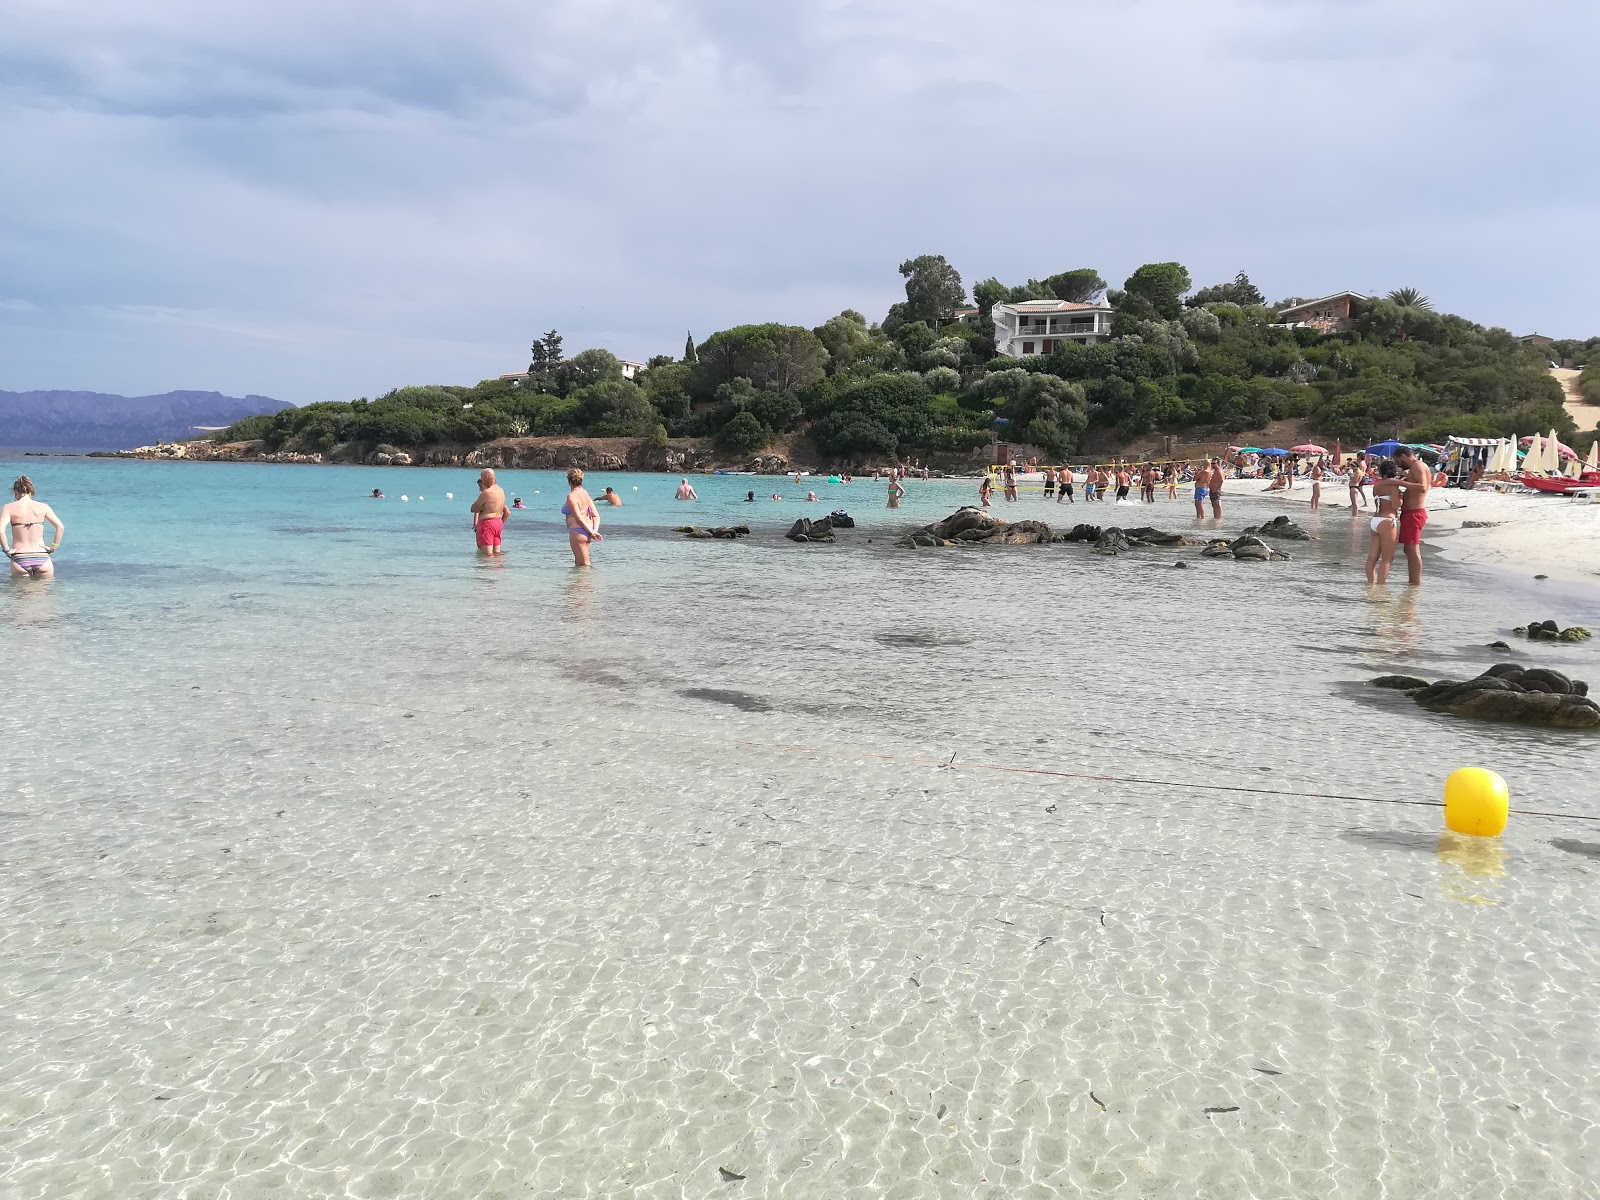 索斯·阿兰佐斯海滩的照片 带有碧绿色纯水表面